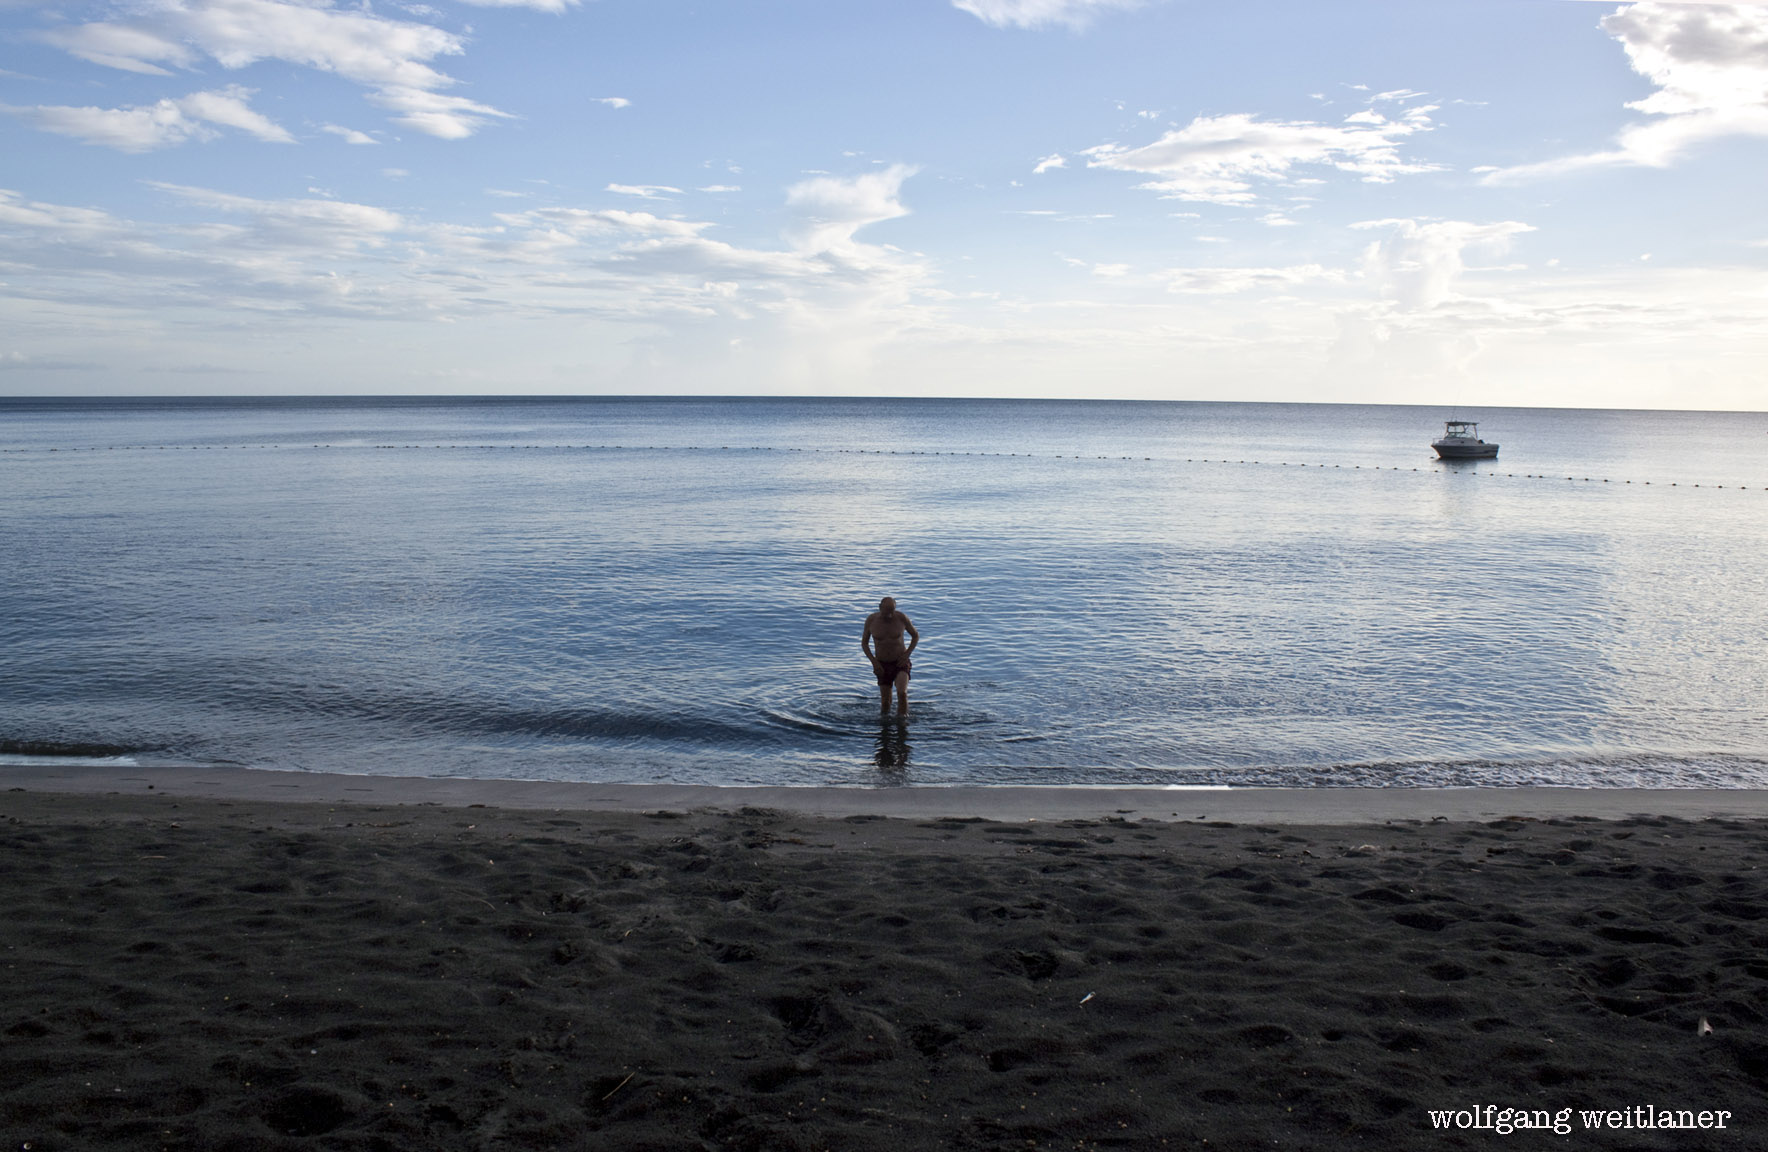 Auch Dominica hat einige Strände - die Badestrände finden sich auf der West- und Norddküste. Auf der Atlantikküste ist die Brandung stark. Der letzte Badegast vor Sonnenuntergang genoß den ganzen Strand für sich alleine.